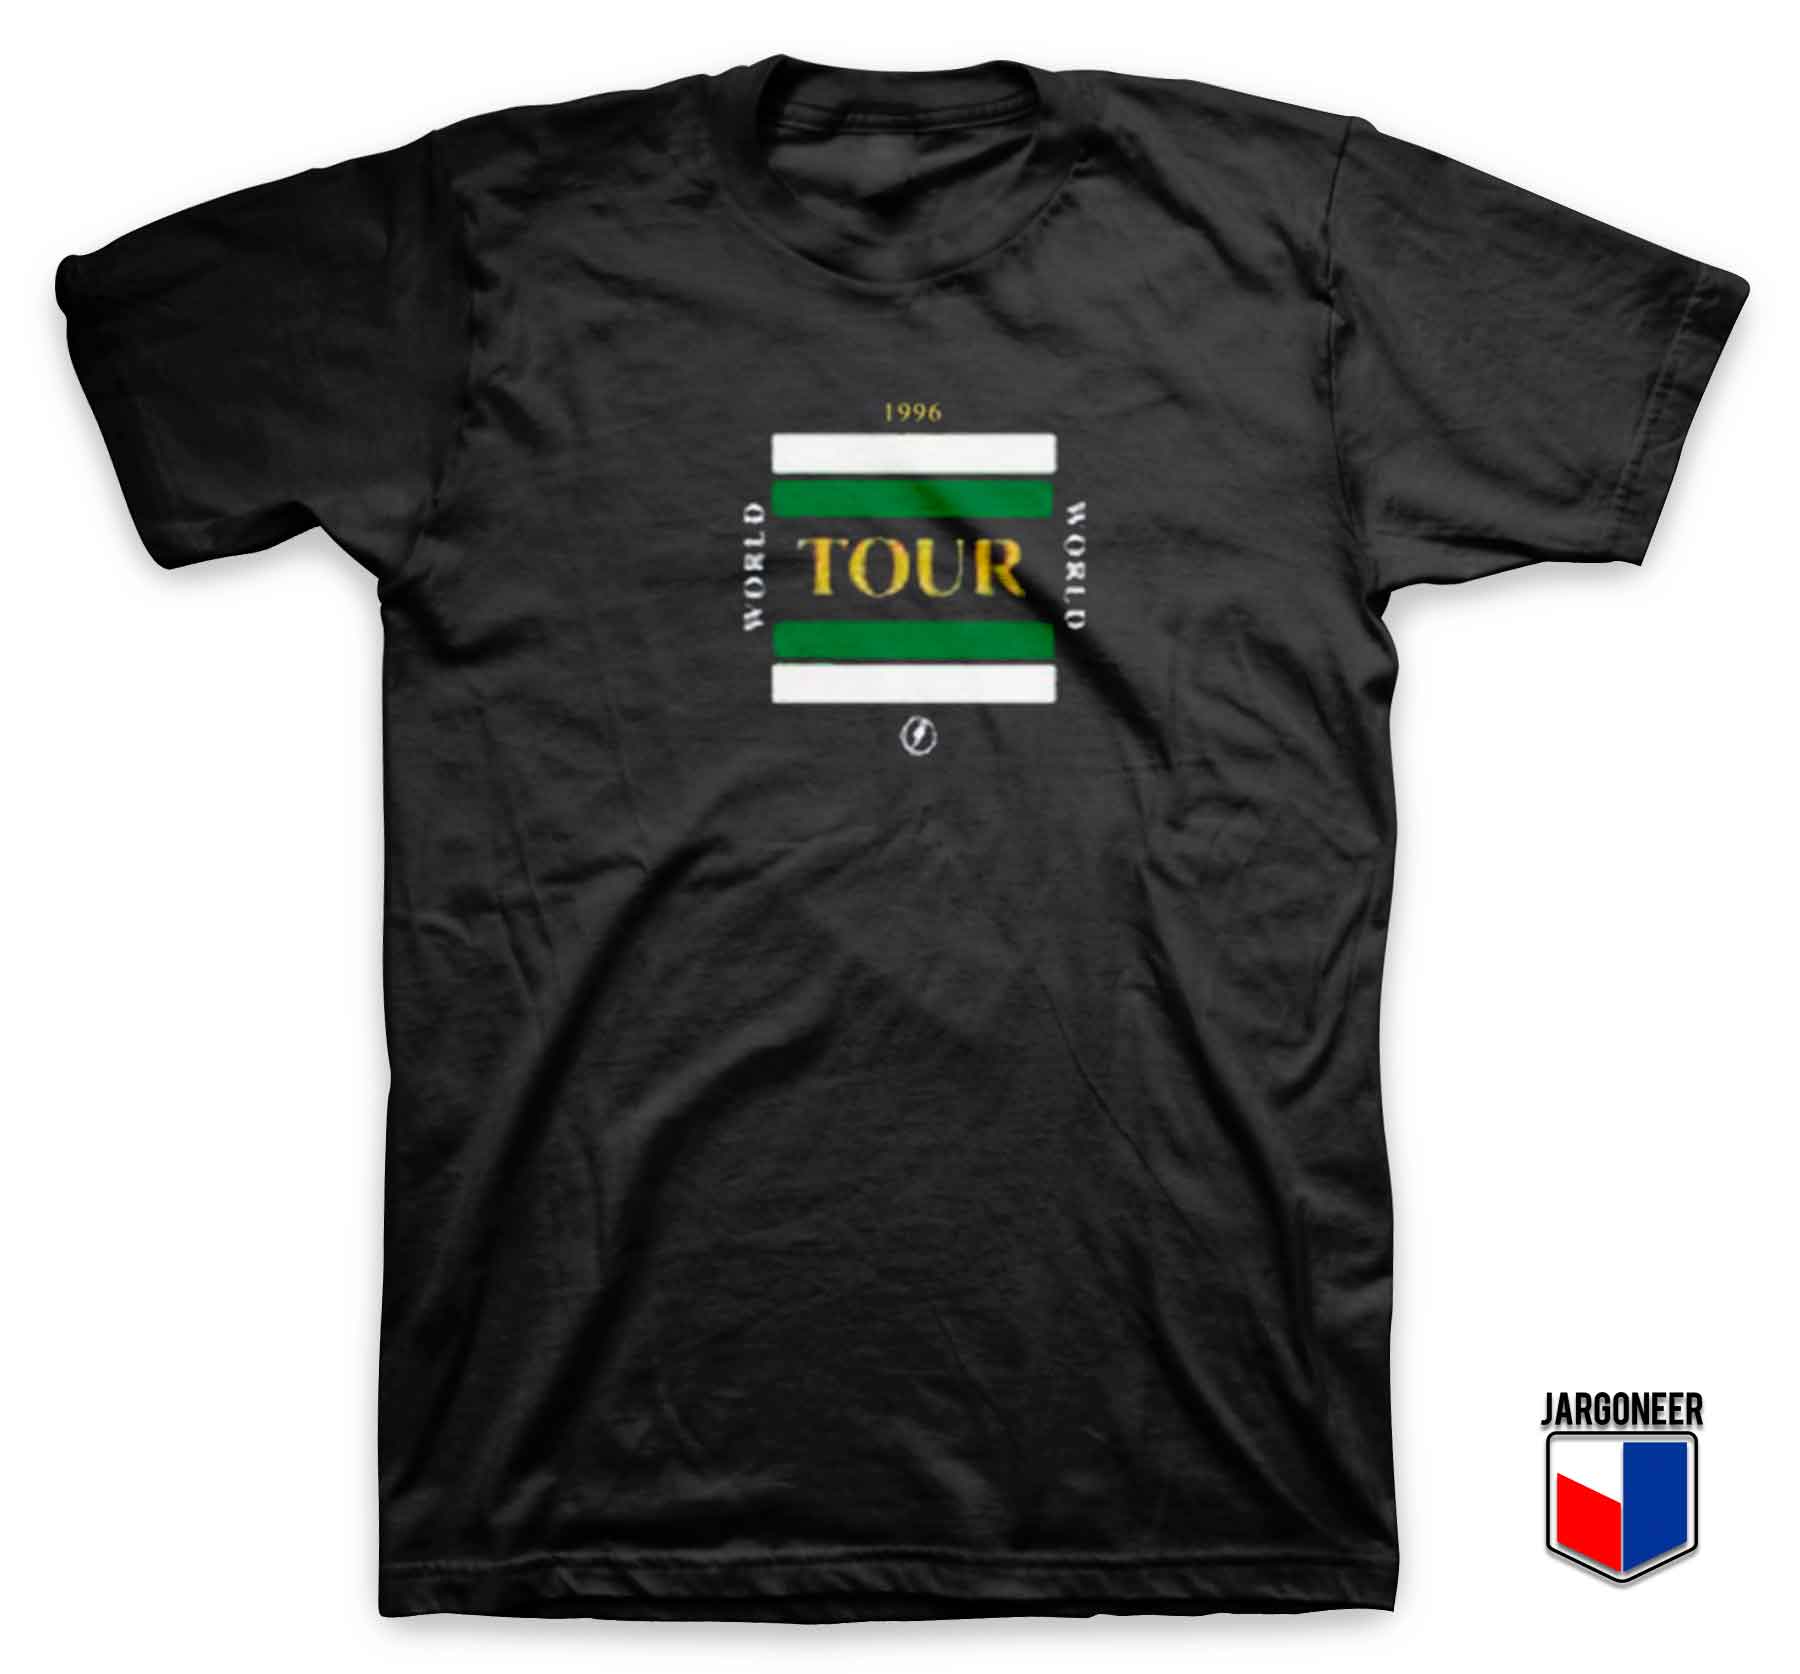 World Tour 1996 - Shop Unique Graphic Cool Shirt Designs